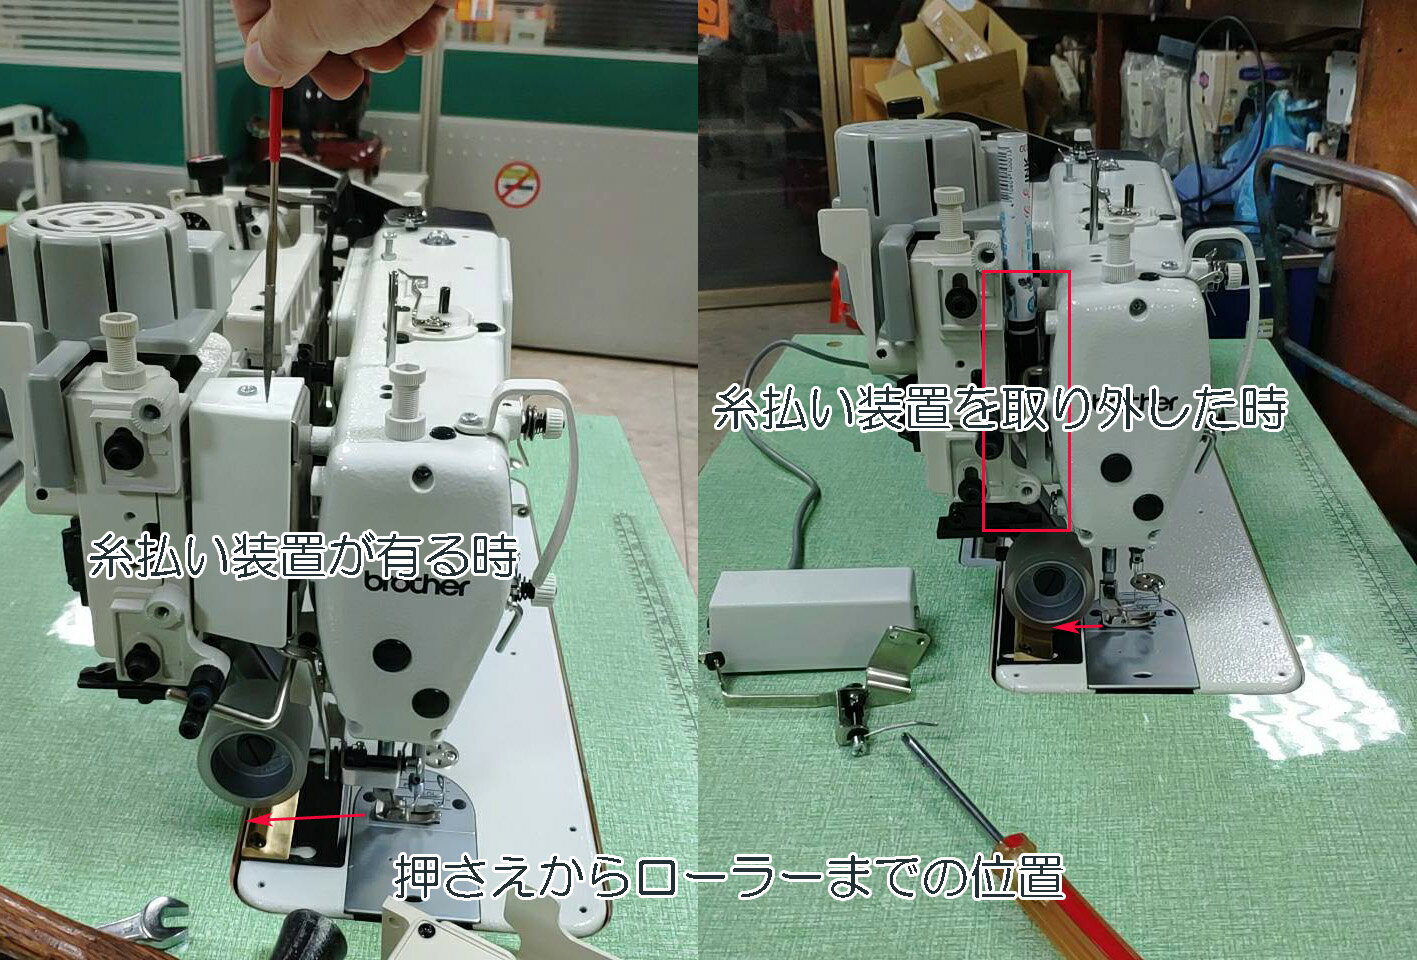 ブラザーミシン　モデルNO−S−7250ー403P　1本針自動糸切ミシン「200V仕様」台湾レーシングプーラー付き 電気ソレノイド式　押さえ上げ装置付き